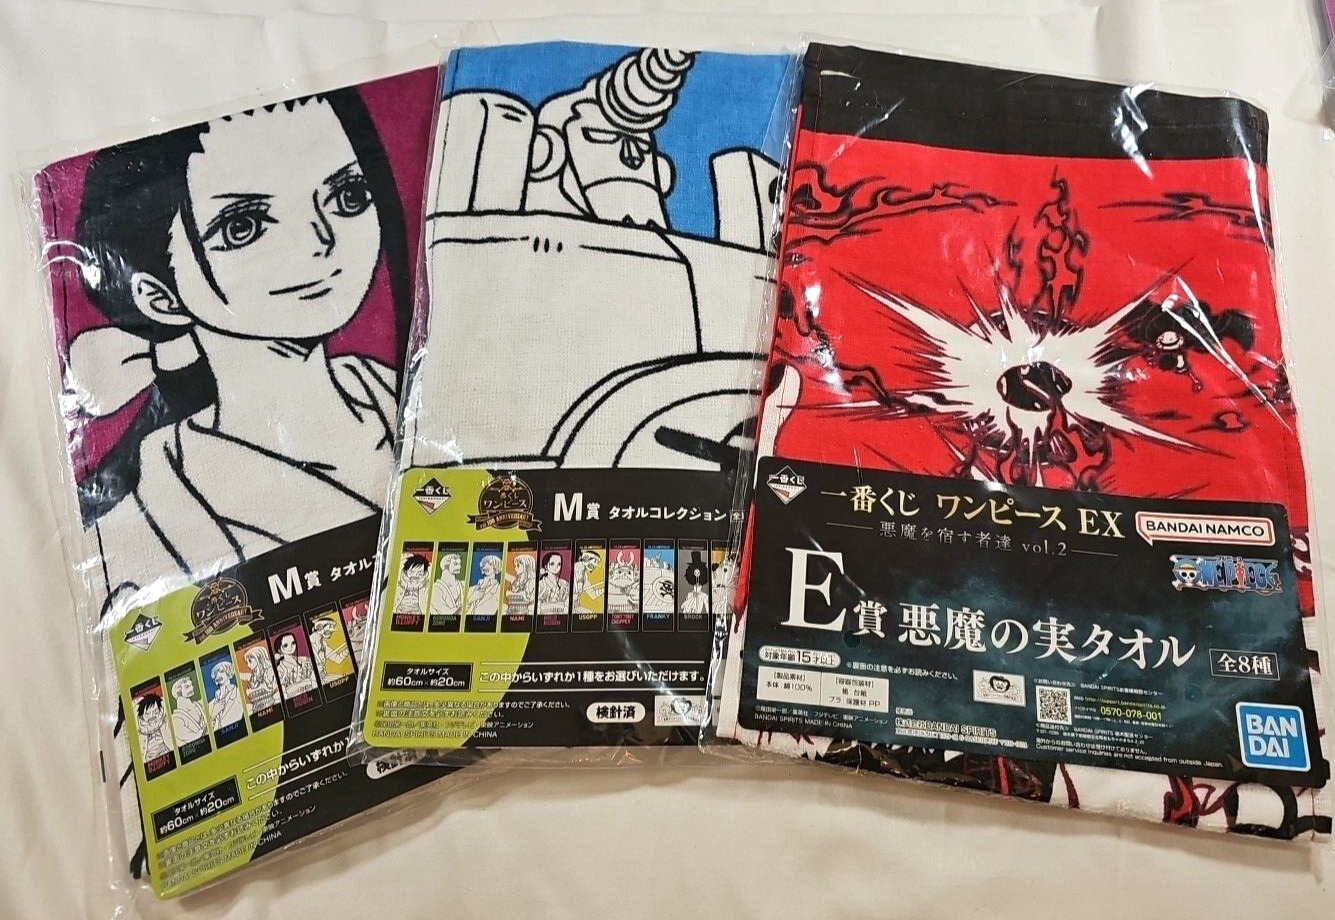 Bandai Spirits Towel Collection - 3 Towels from Bandai Namco